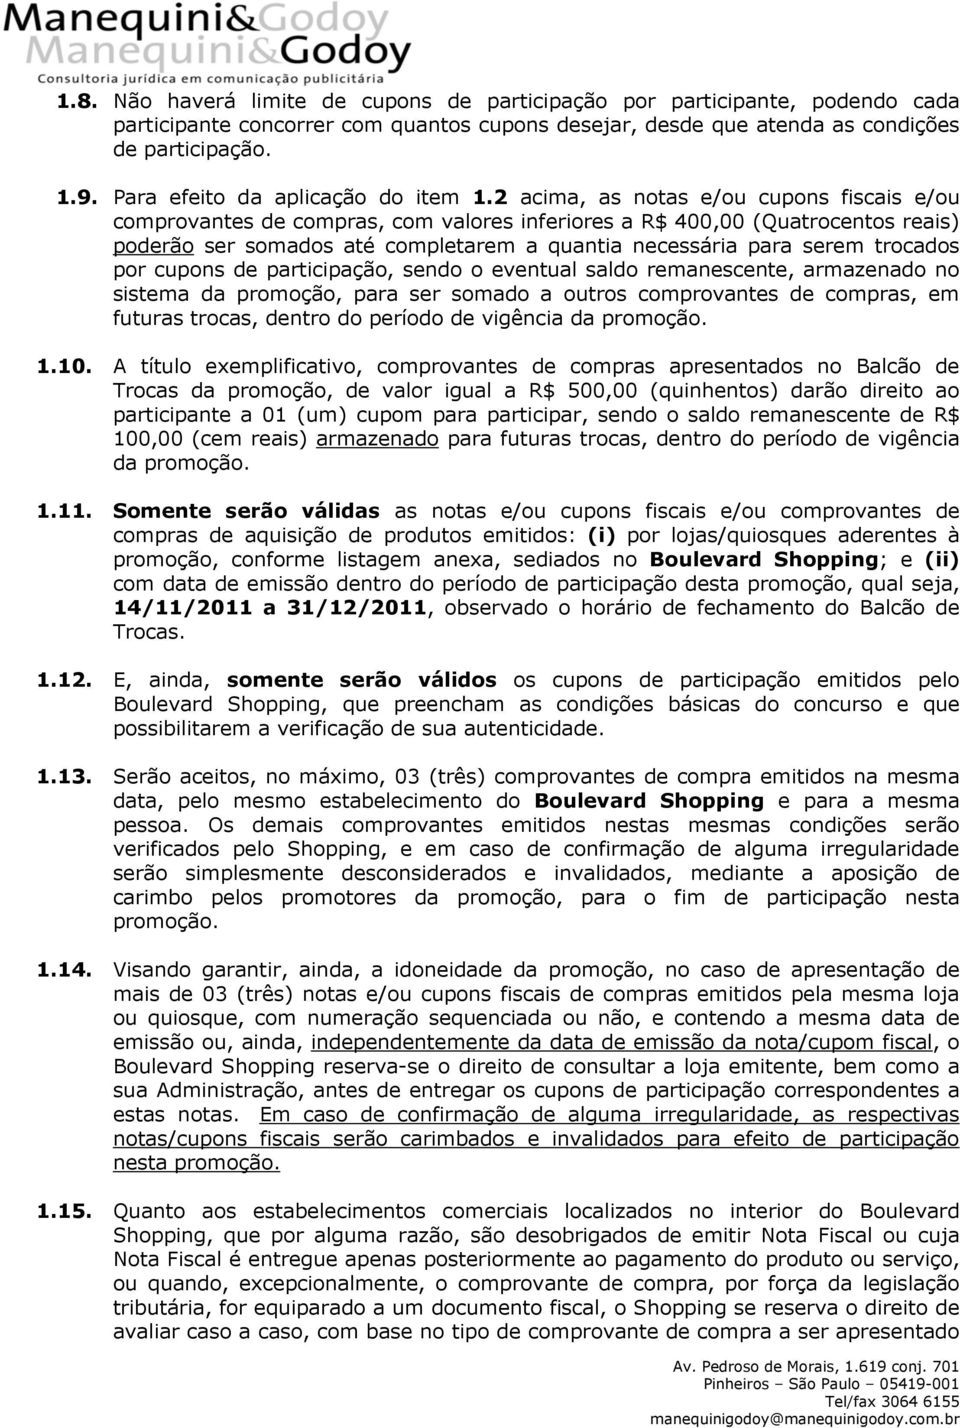 Regulamento. PROMOÇÃO Natal Boulevard Shopping - PDF Download grátis